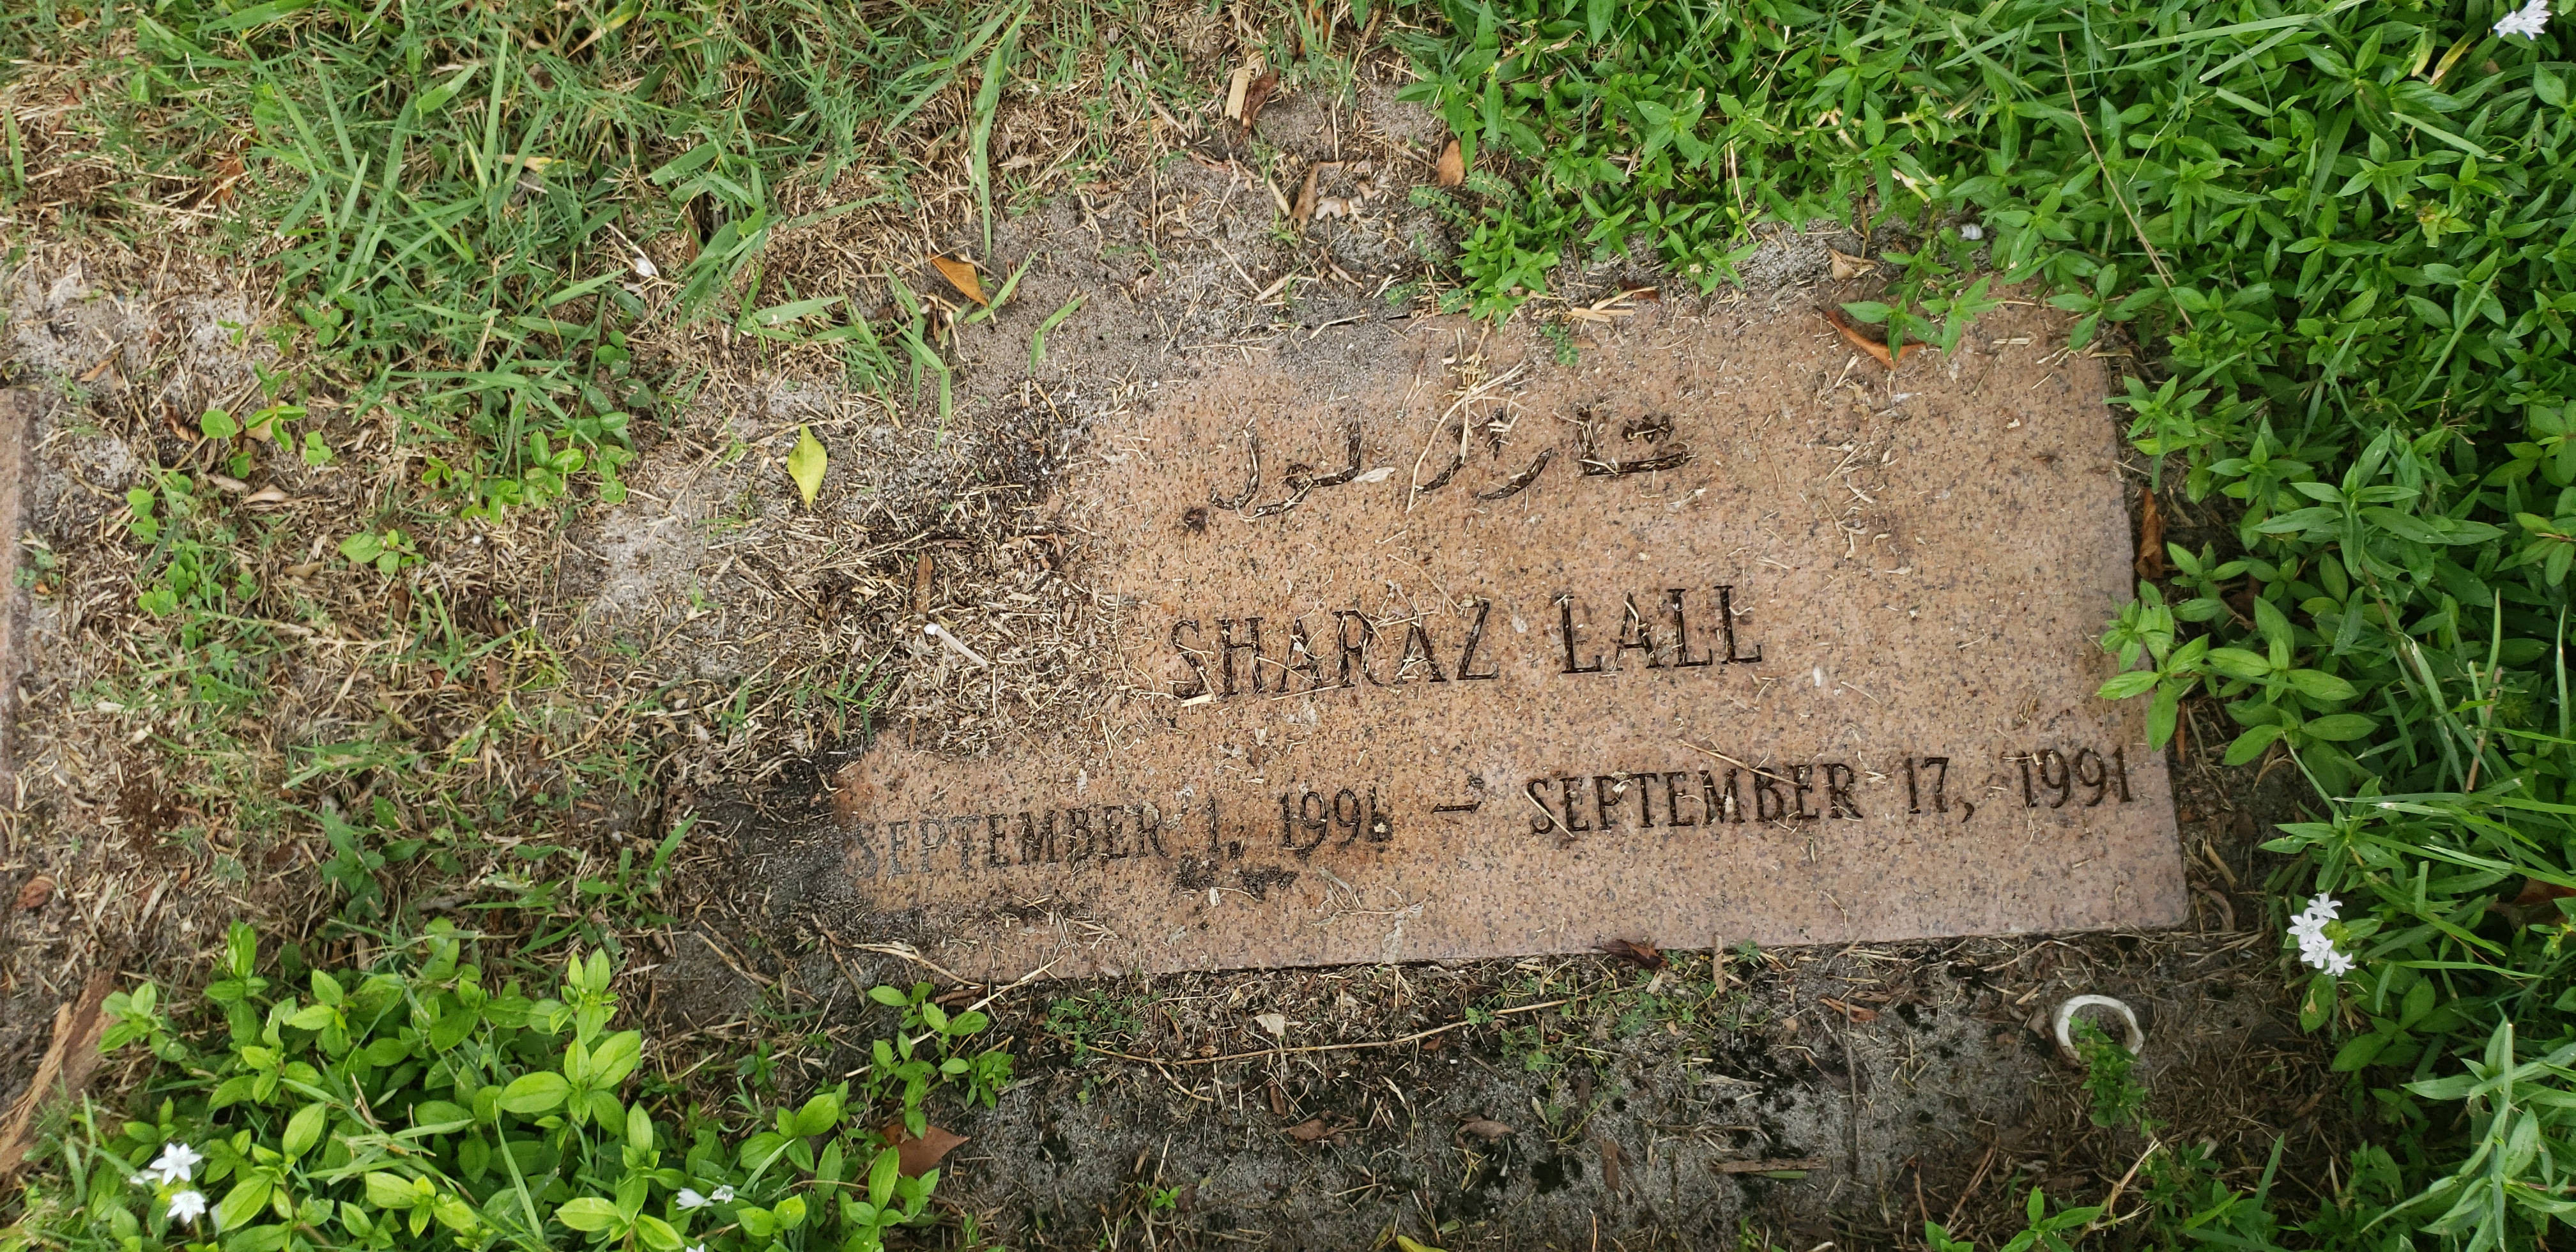 Sharaz Lall